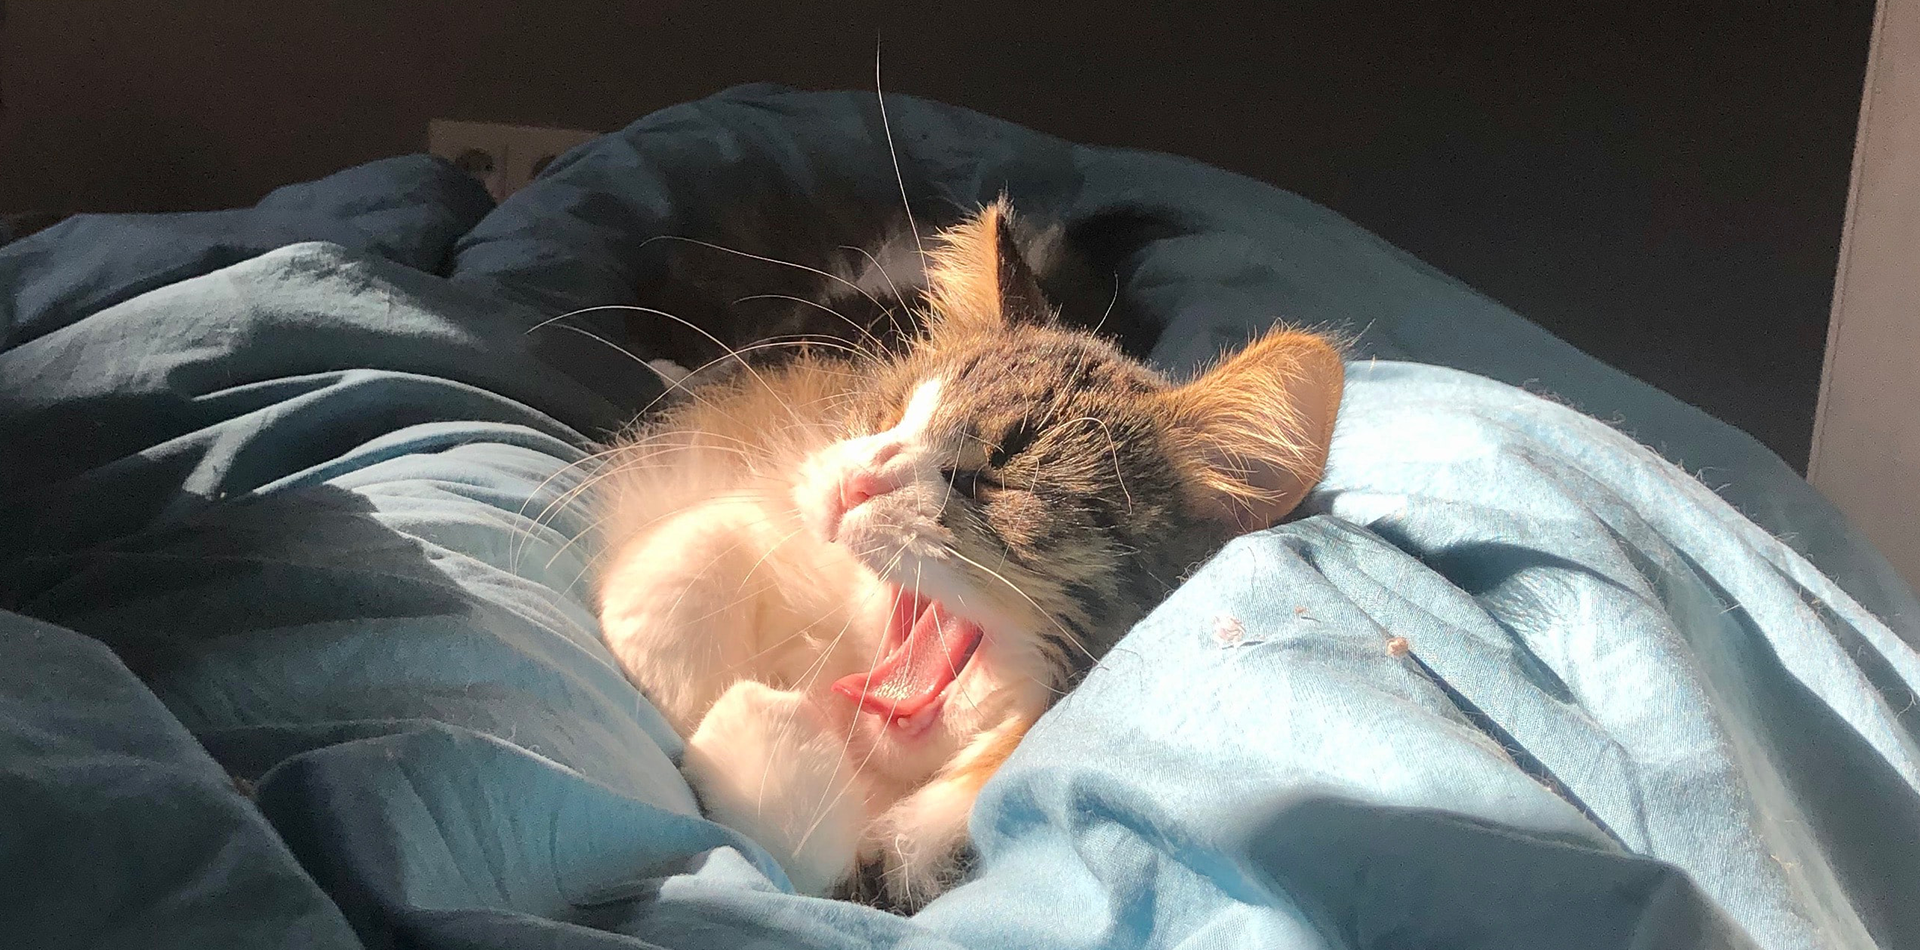 A kitten yawns in the sun